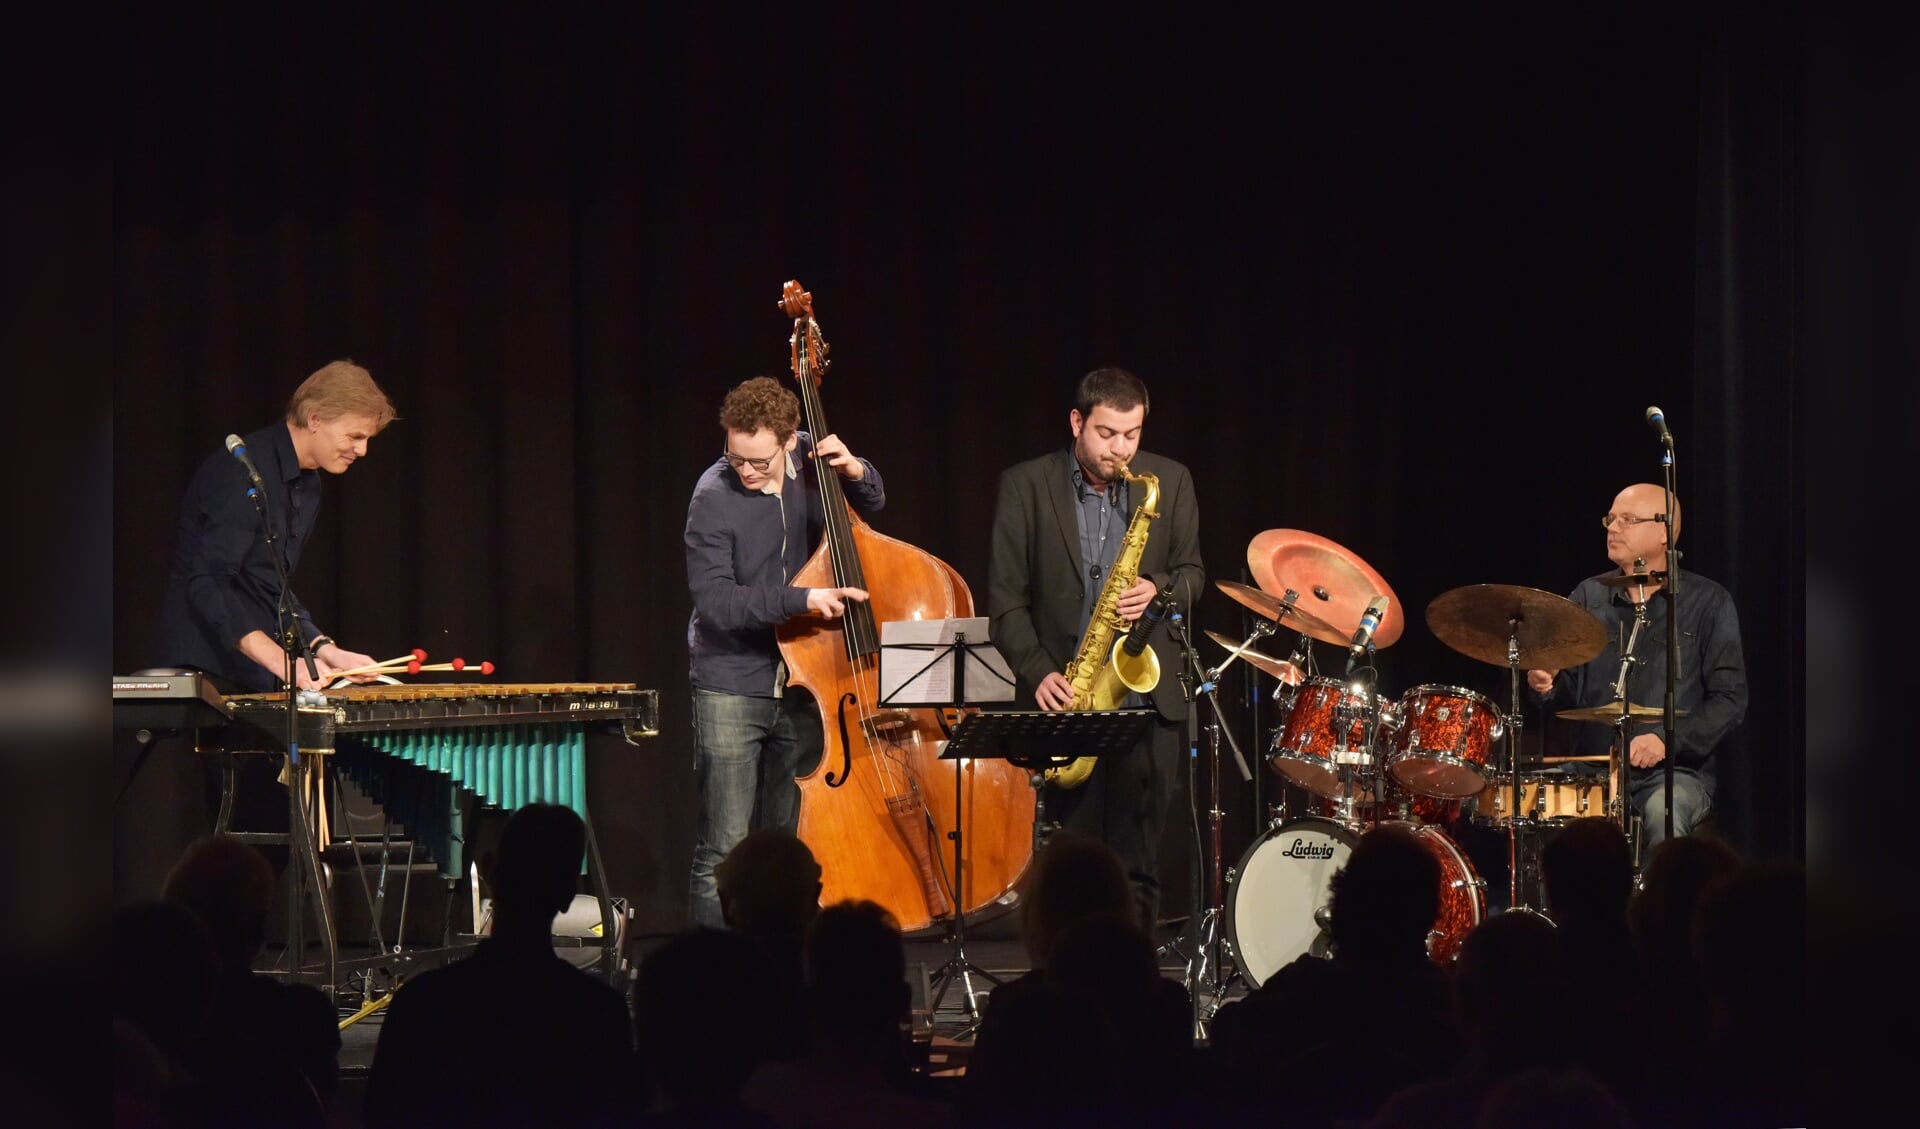 Het jazzconcert van zaterdag 8 december maakte indruk. Foto: pjpj